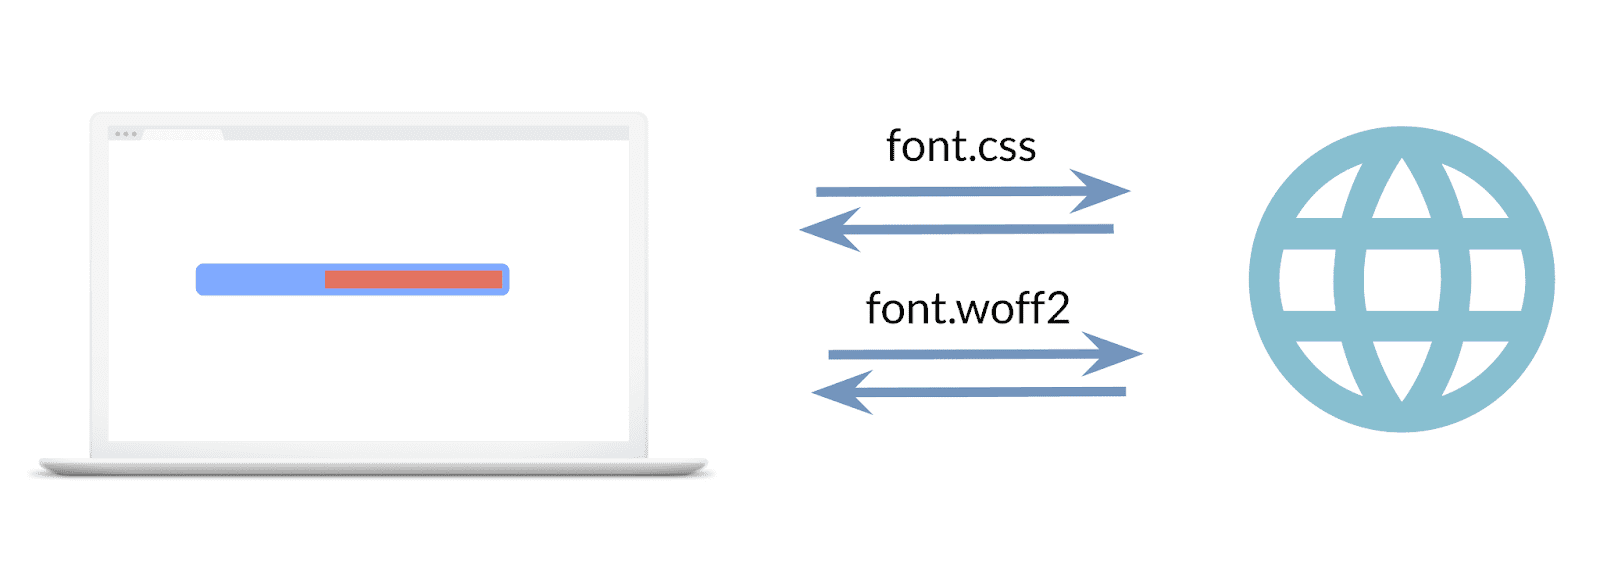 フォント スタイルシート用とフォント ファイル用の 2 つのリクエストを示す画像。